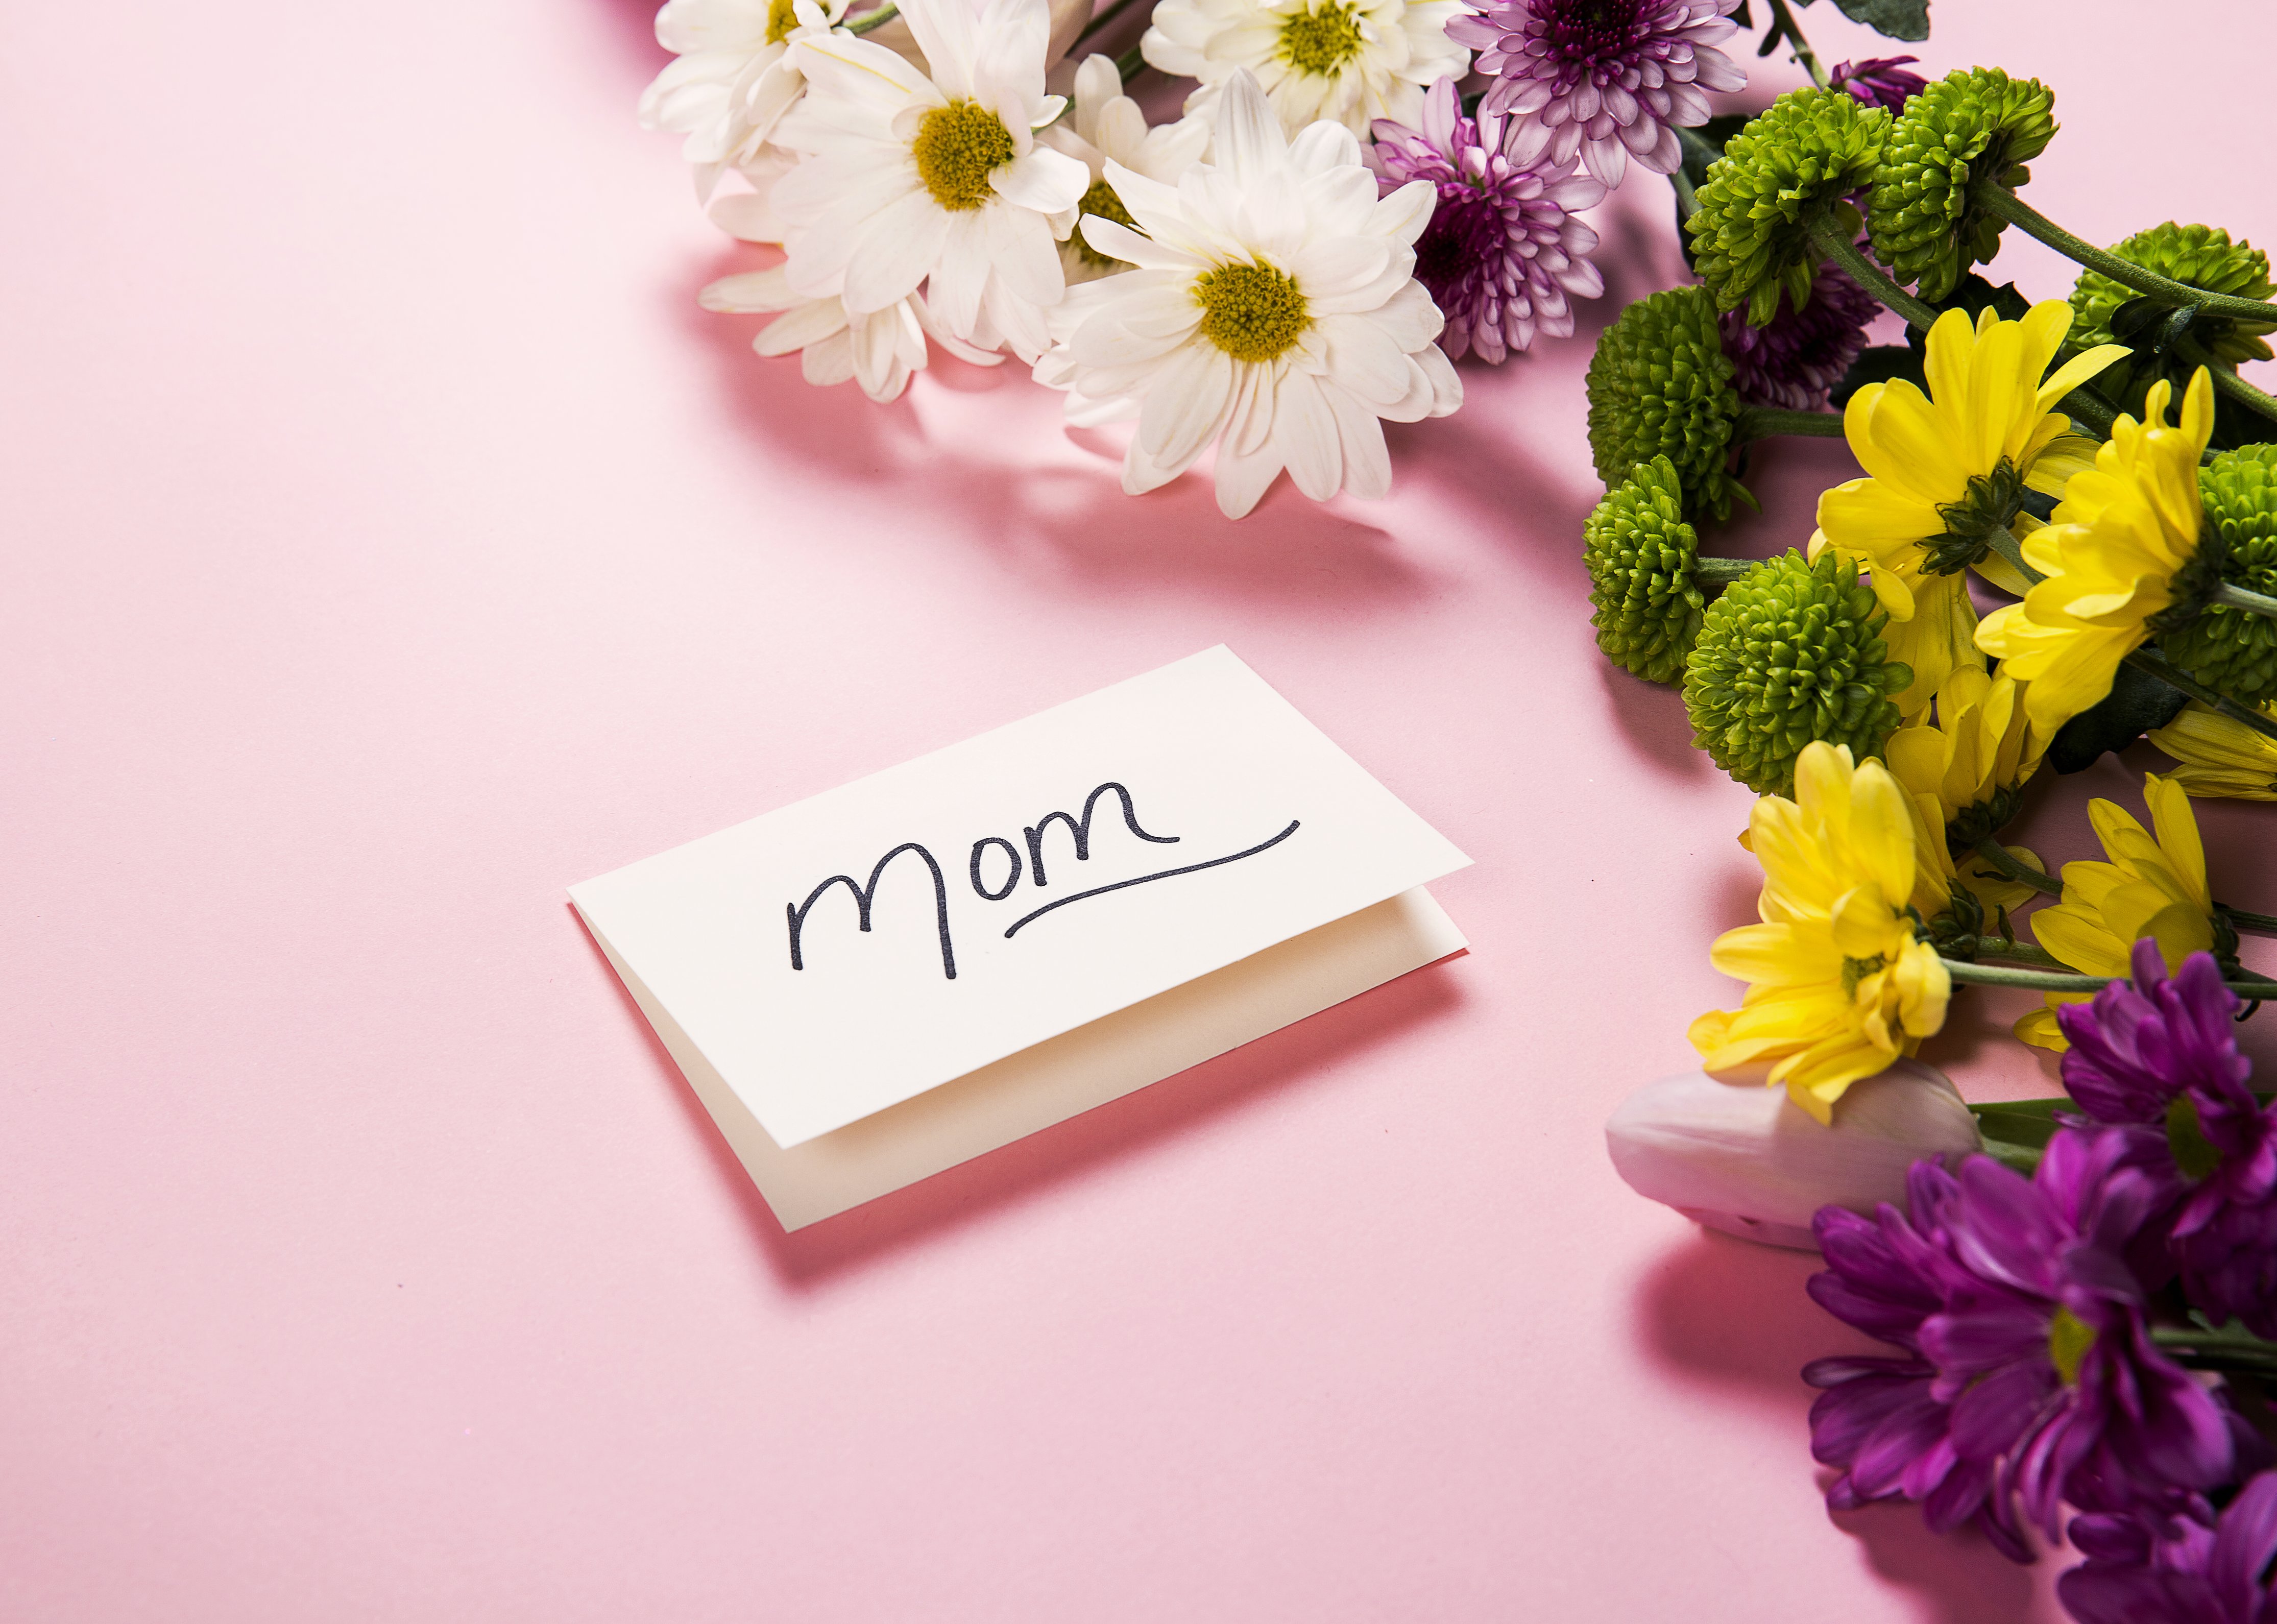 Auguri a tutte le mamme!